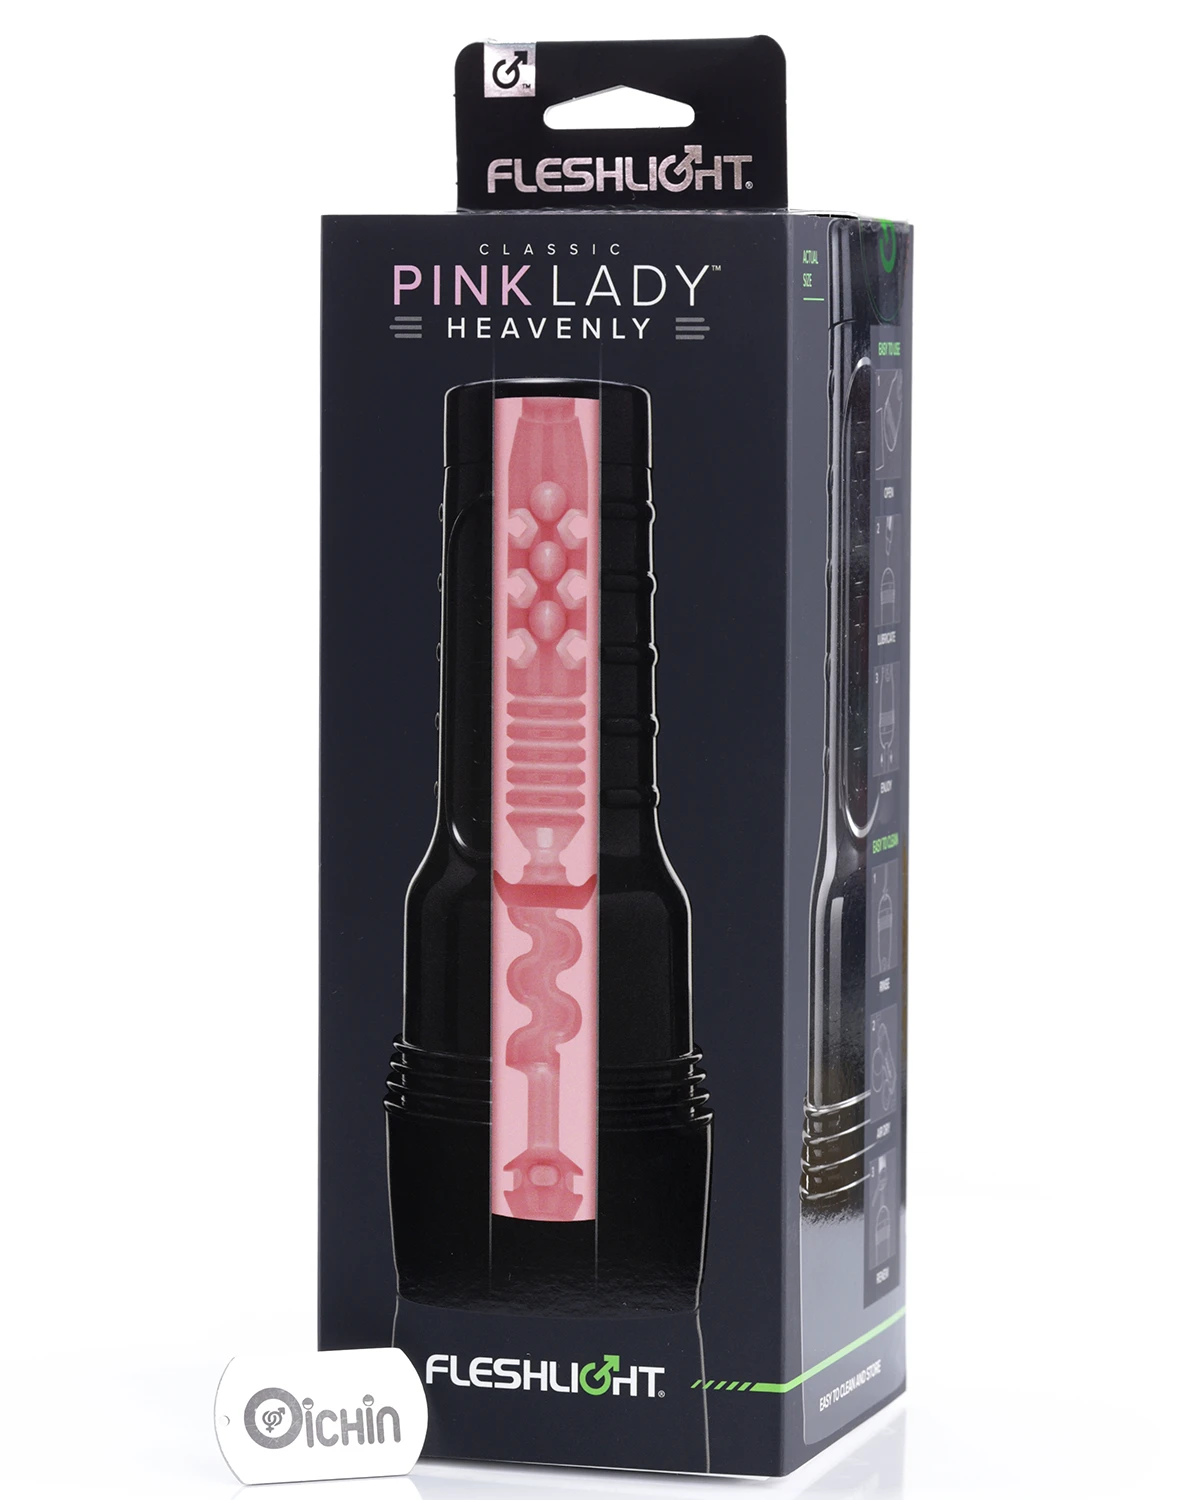 Pink Lady Heavenly là một trong những sextoy mang phong cách cổ điển từ nhà sản xuất Fleshlight